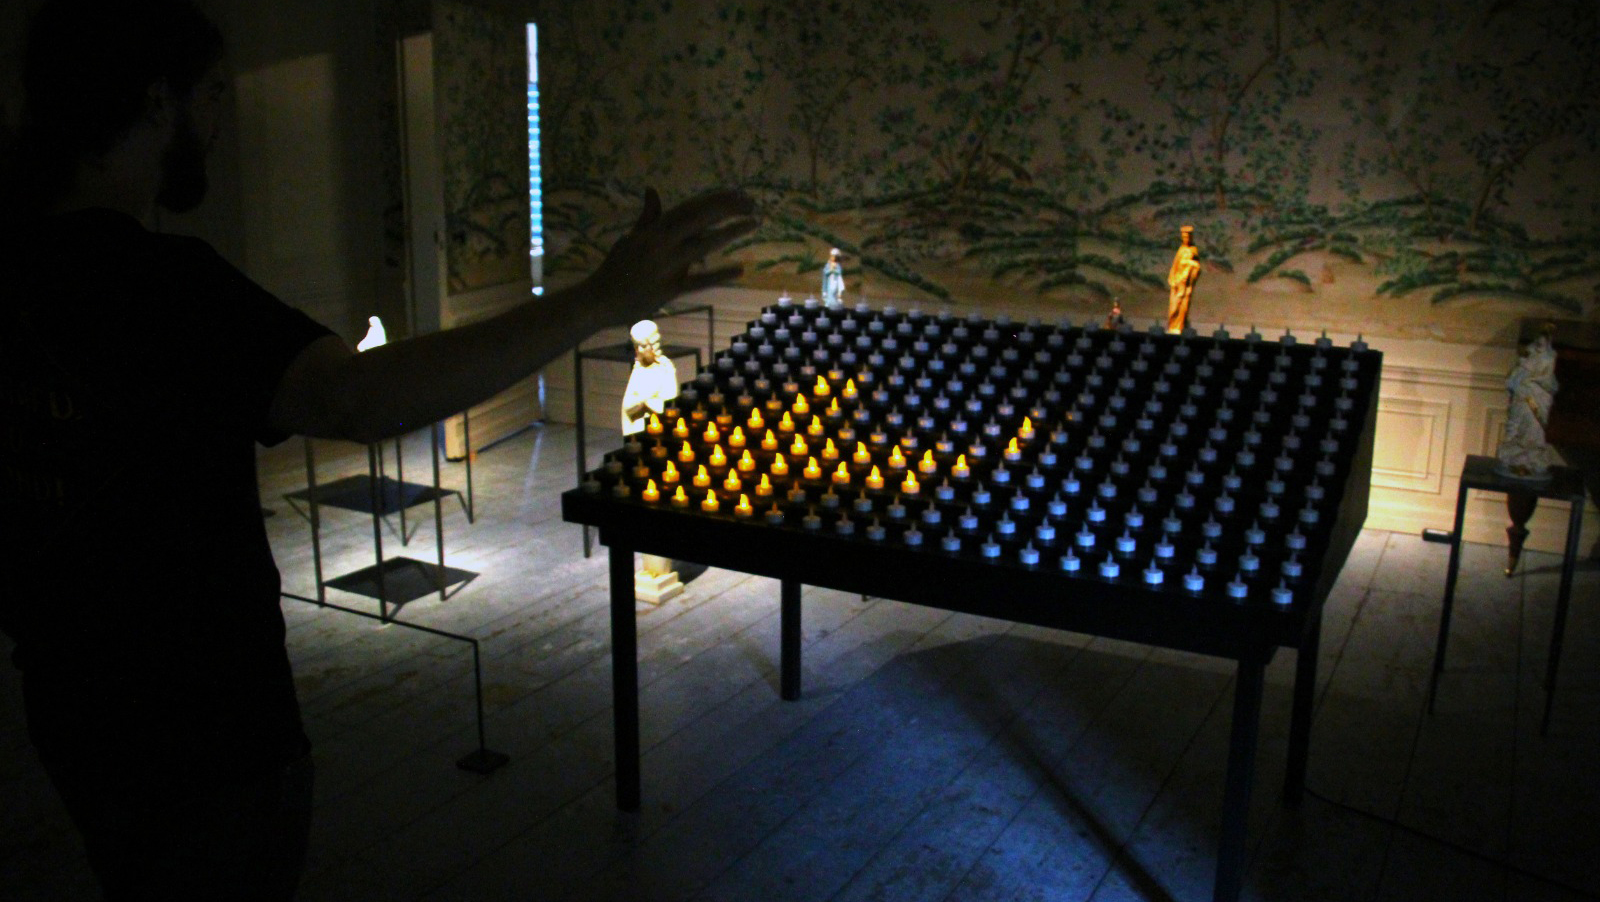 En människa står med utsträckt hand framför ett altarbord fyllt av böneljus, ljusen är vanliga batteriljus och bara några av dem i ett hörn lyser i mönstret av ett kors. I bakgrunden står svarta piedestaler med olika kyrkostatyer på.